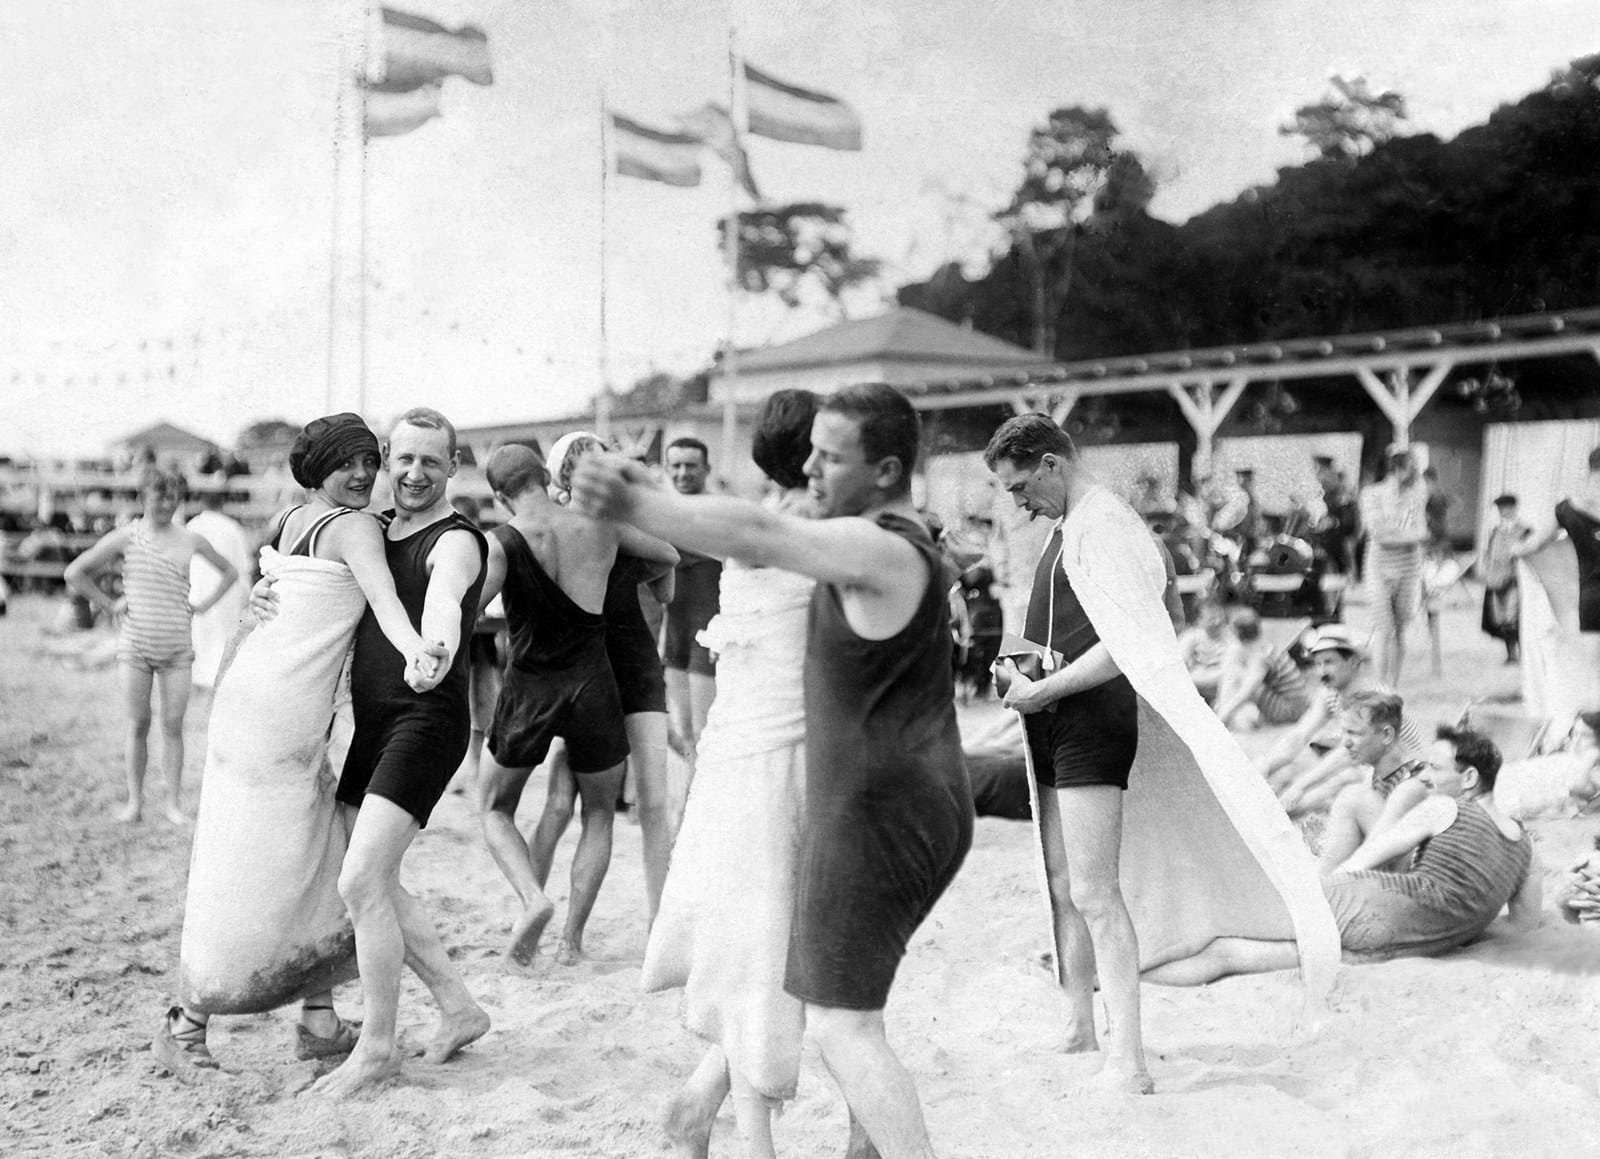 Танцы на пляже в Ванзее, Берлин, 1911 г.